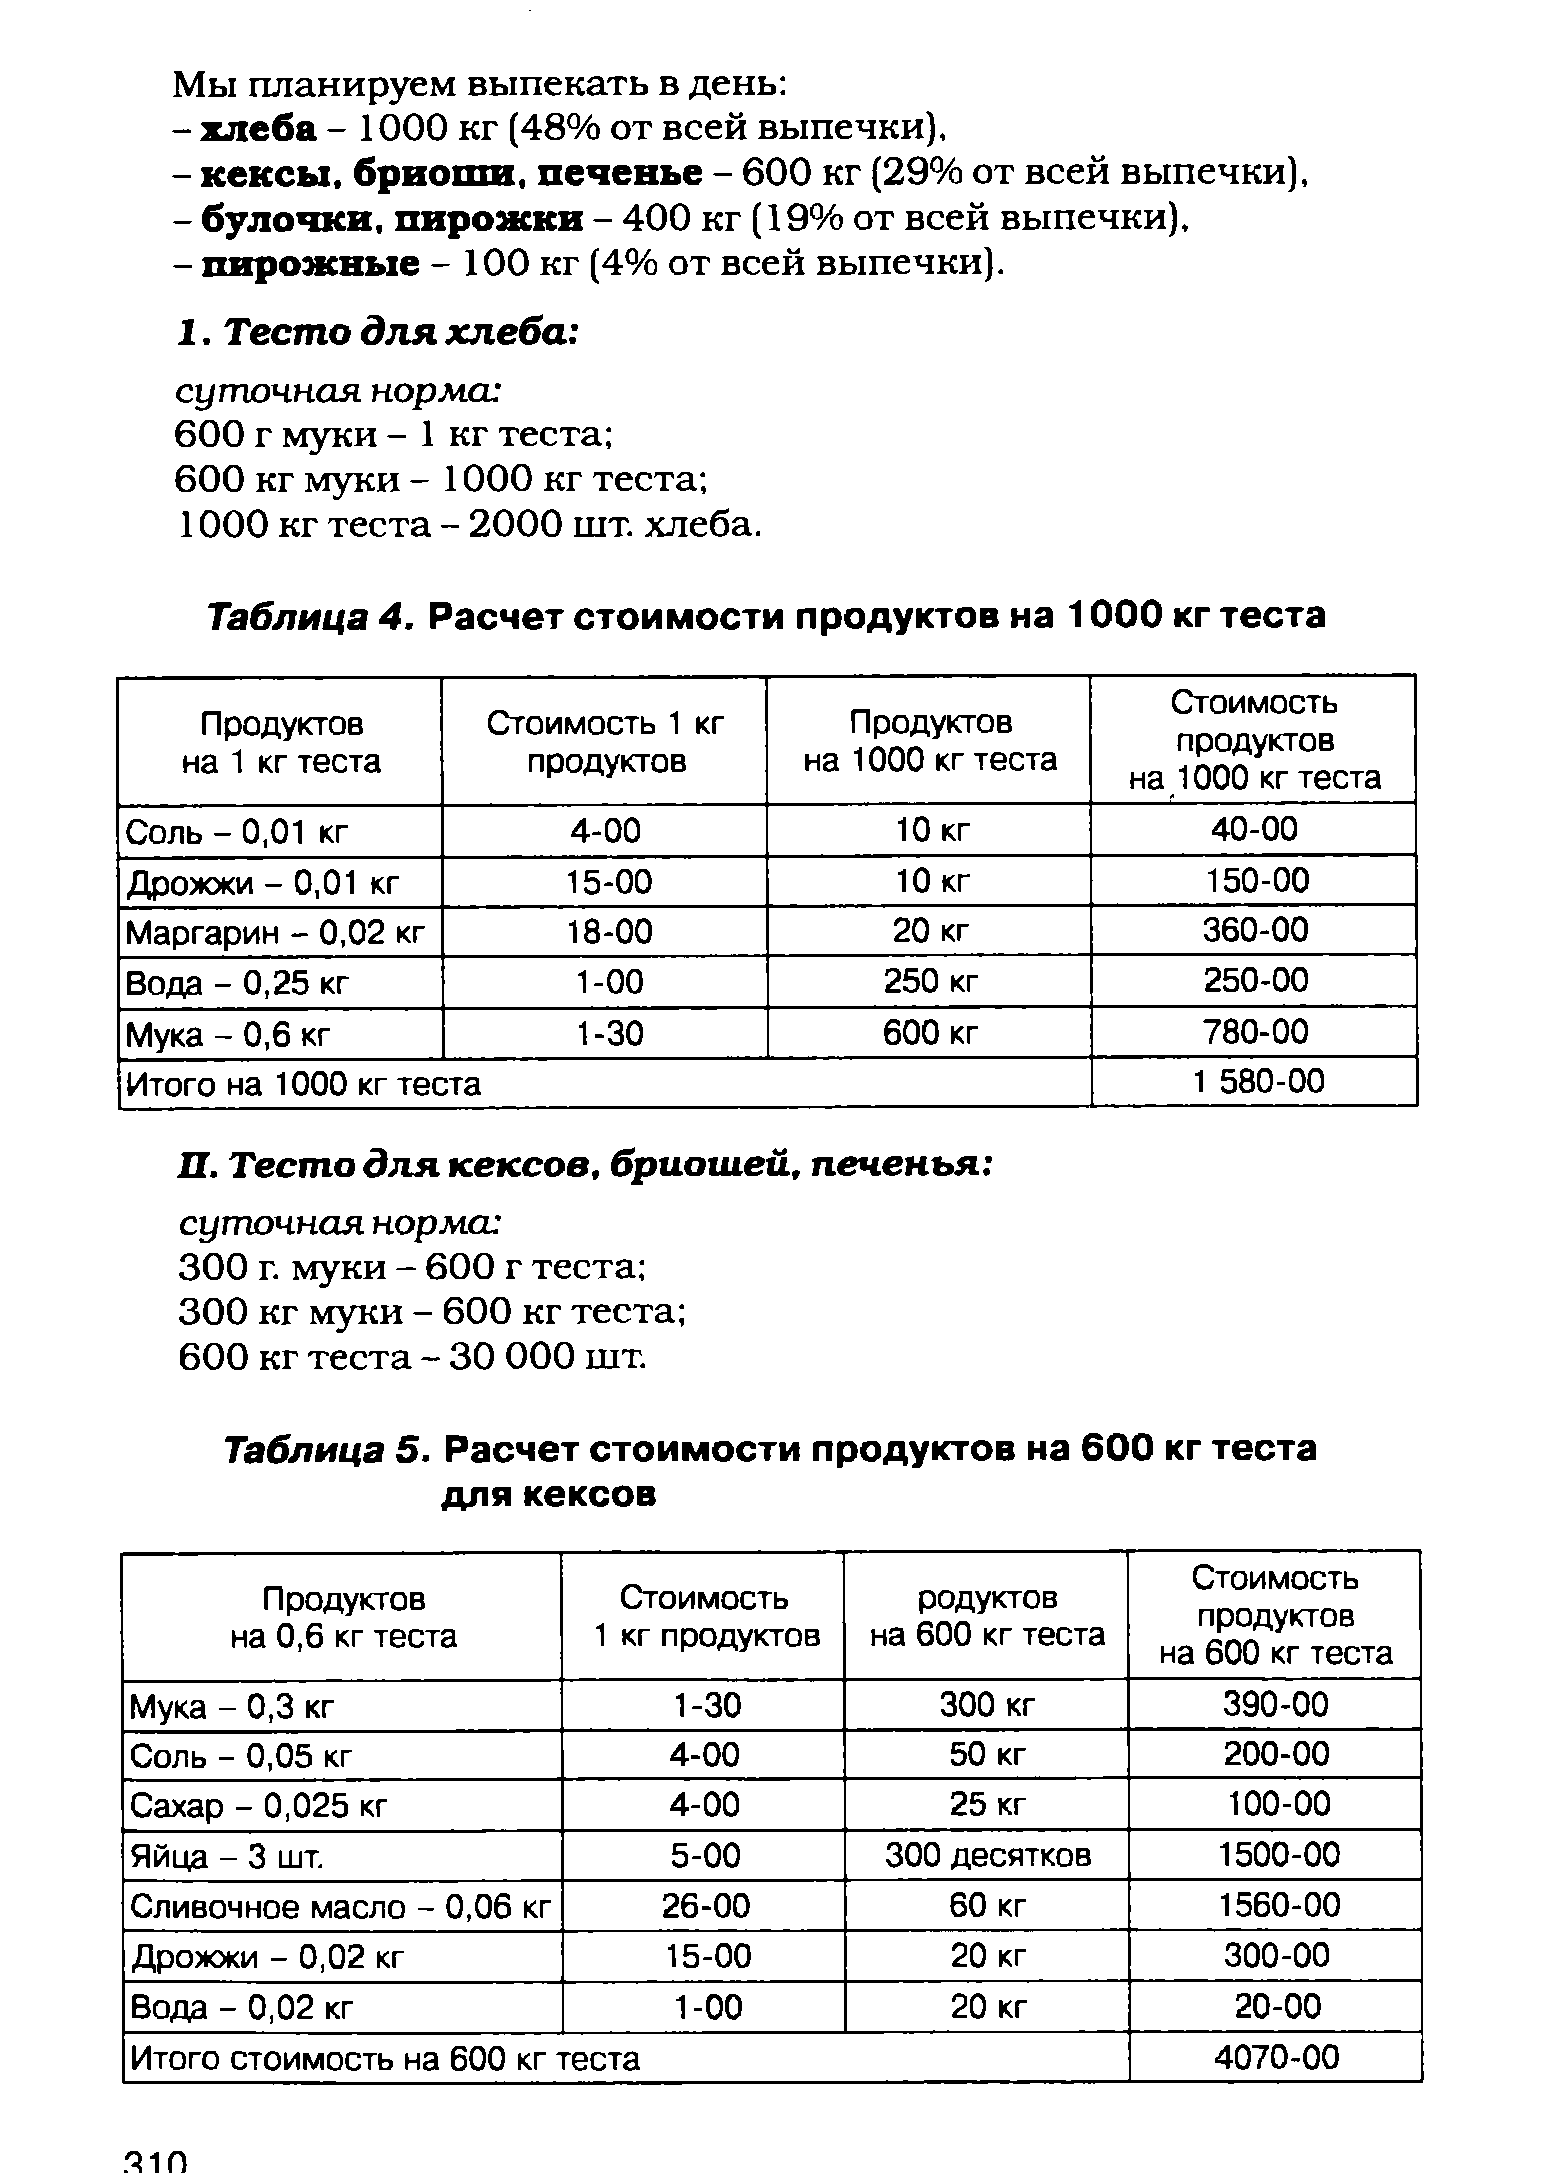 Таблица 5. Расчет стоимости продуктов на 600 кг теста для кексов
